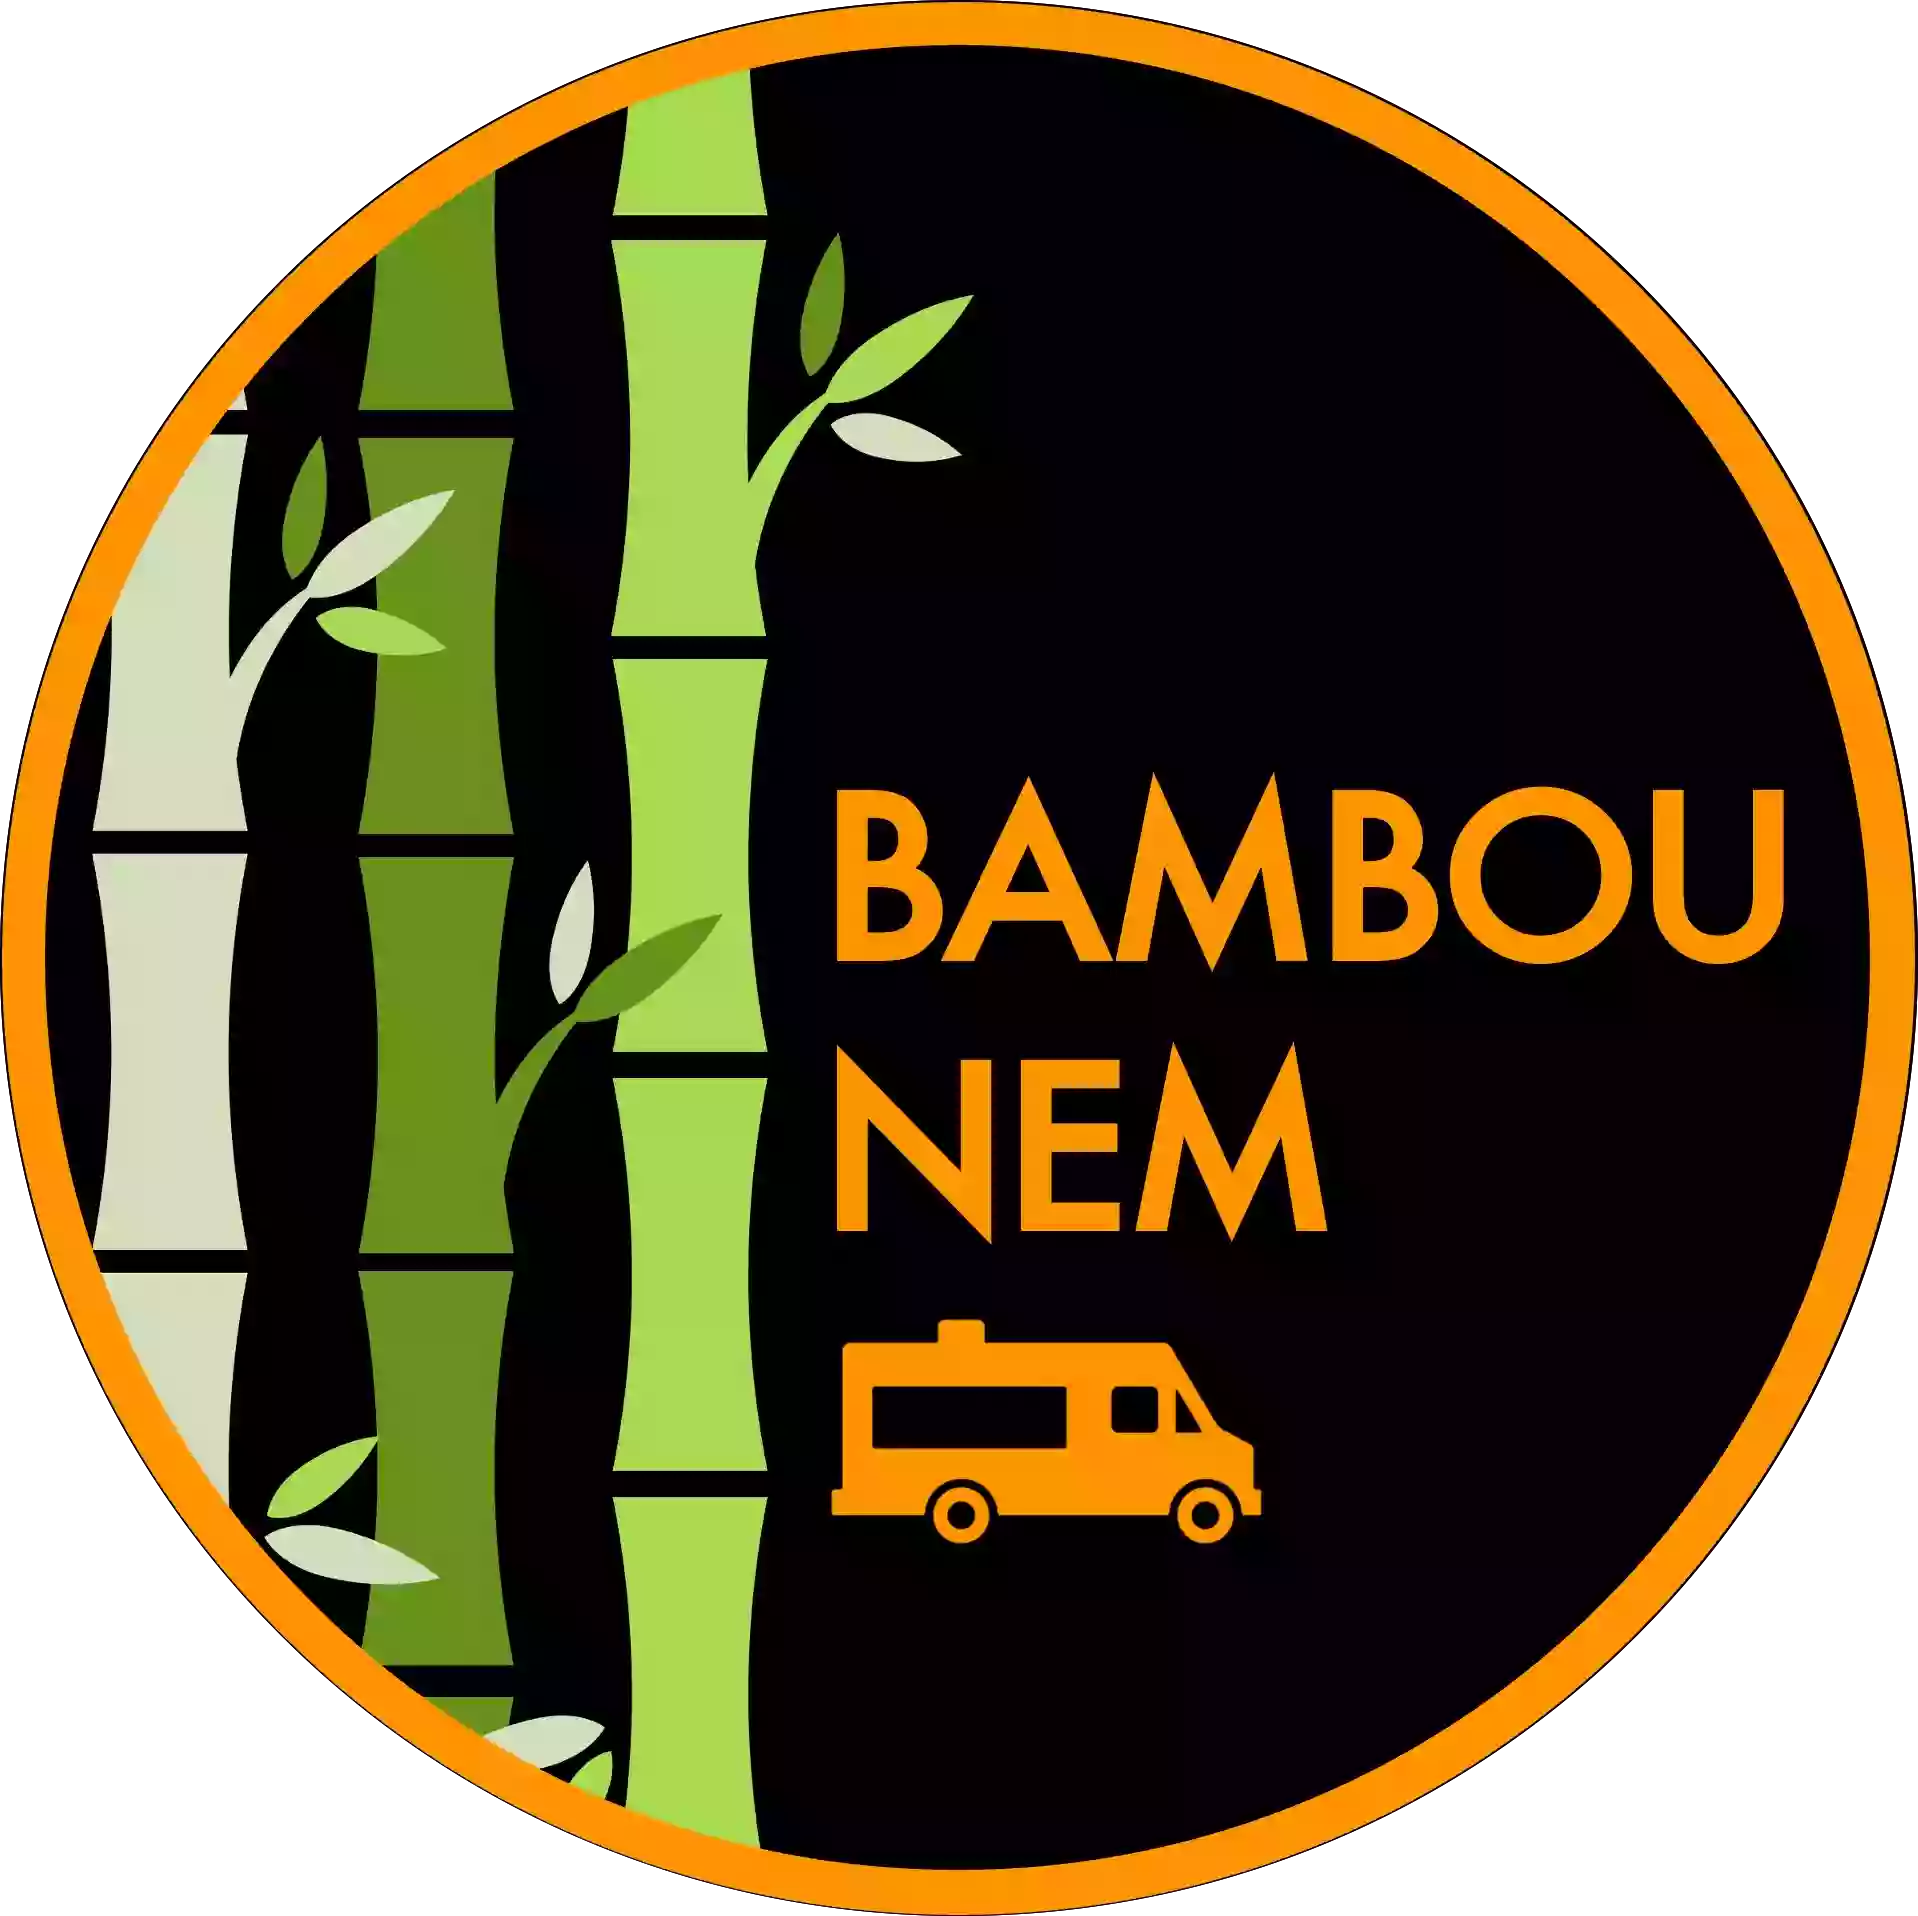 Bambou Nem